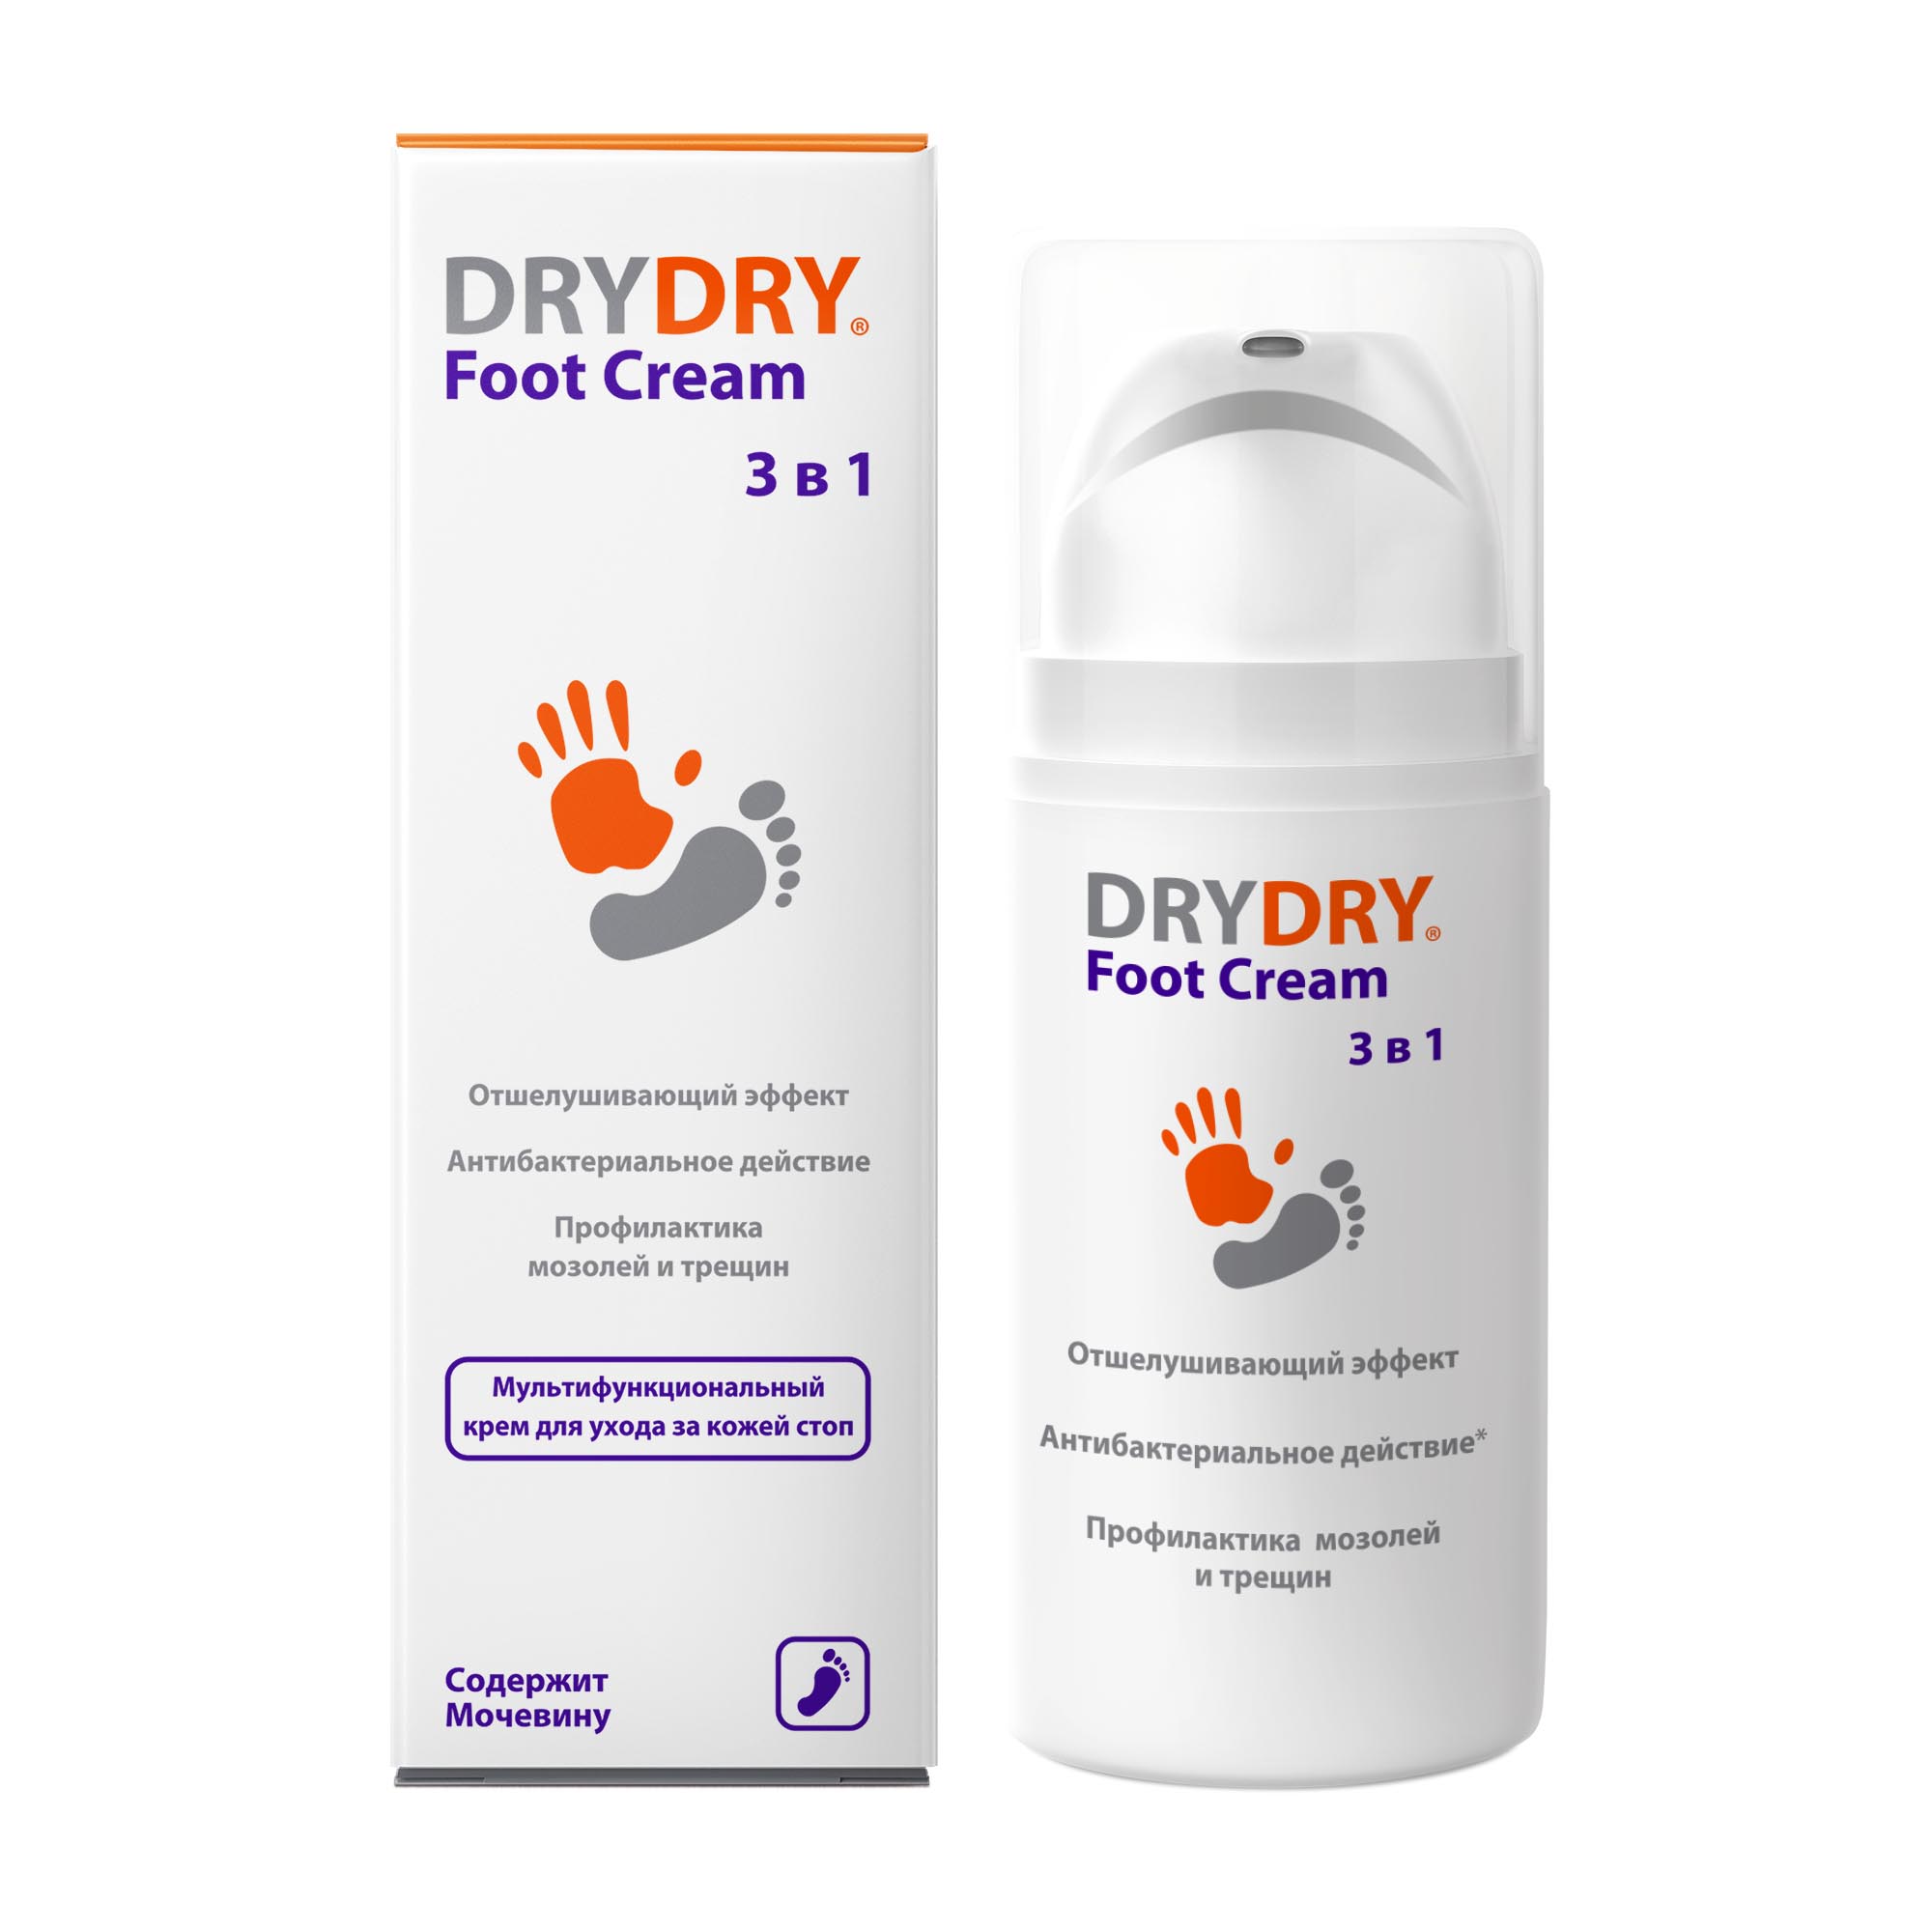 Драй драй для ног. Dry Dry крем. Аналог драй драй. Dry Dry для ног аналоги. Dry dry foot